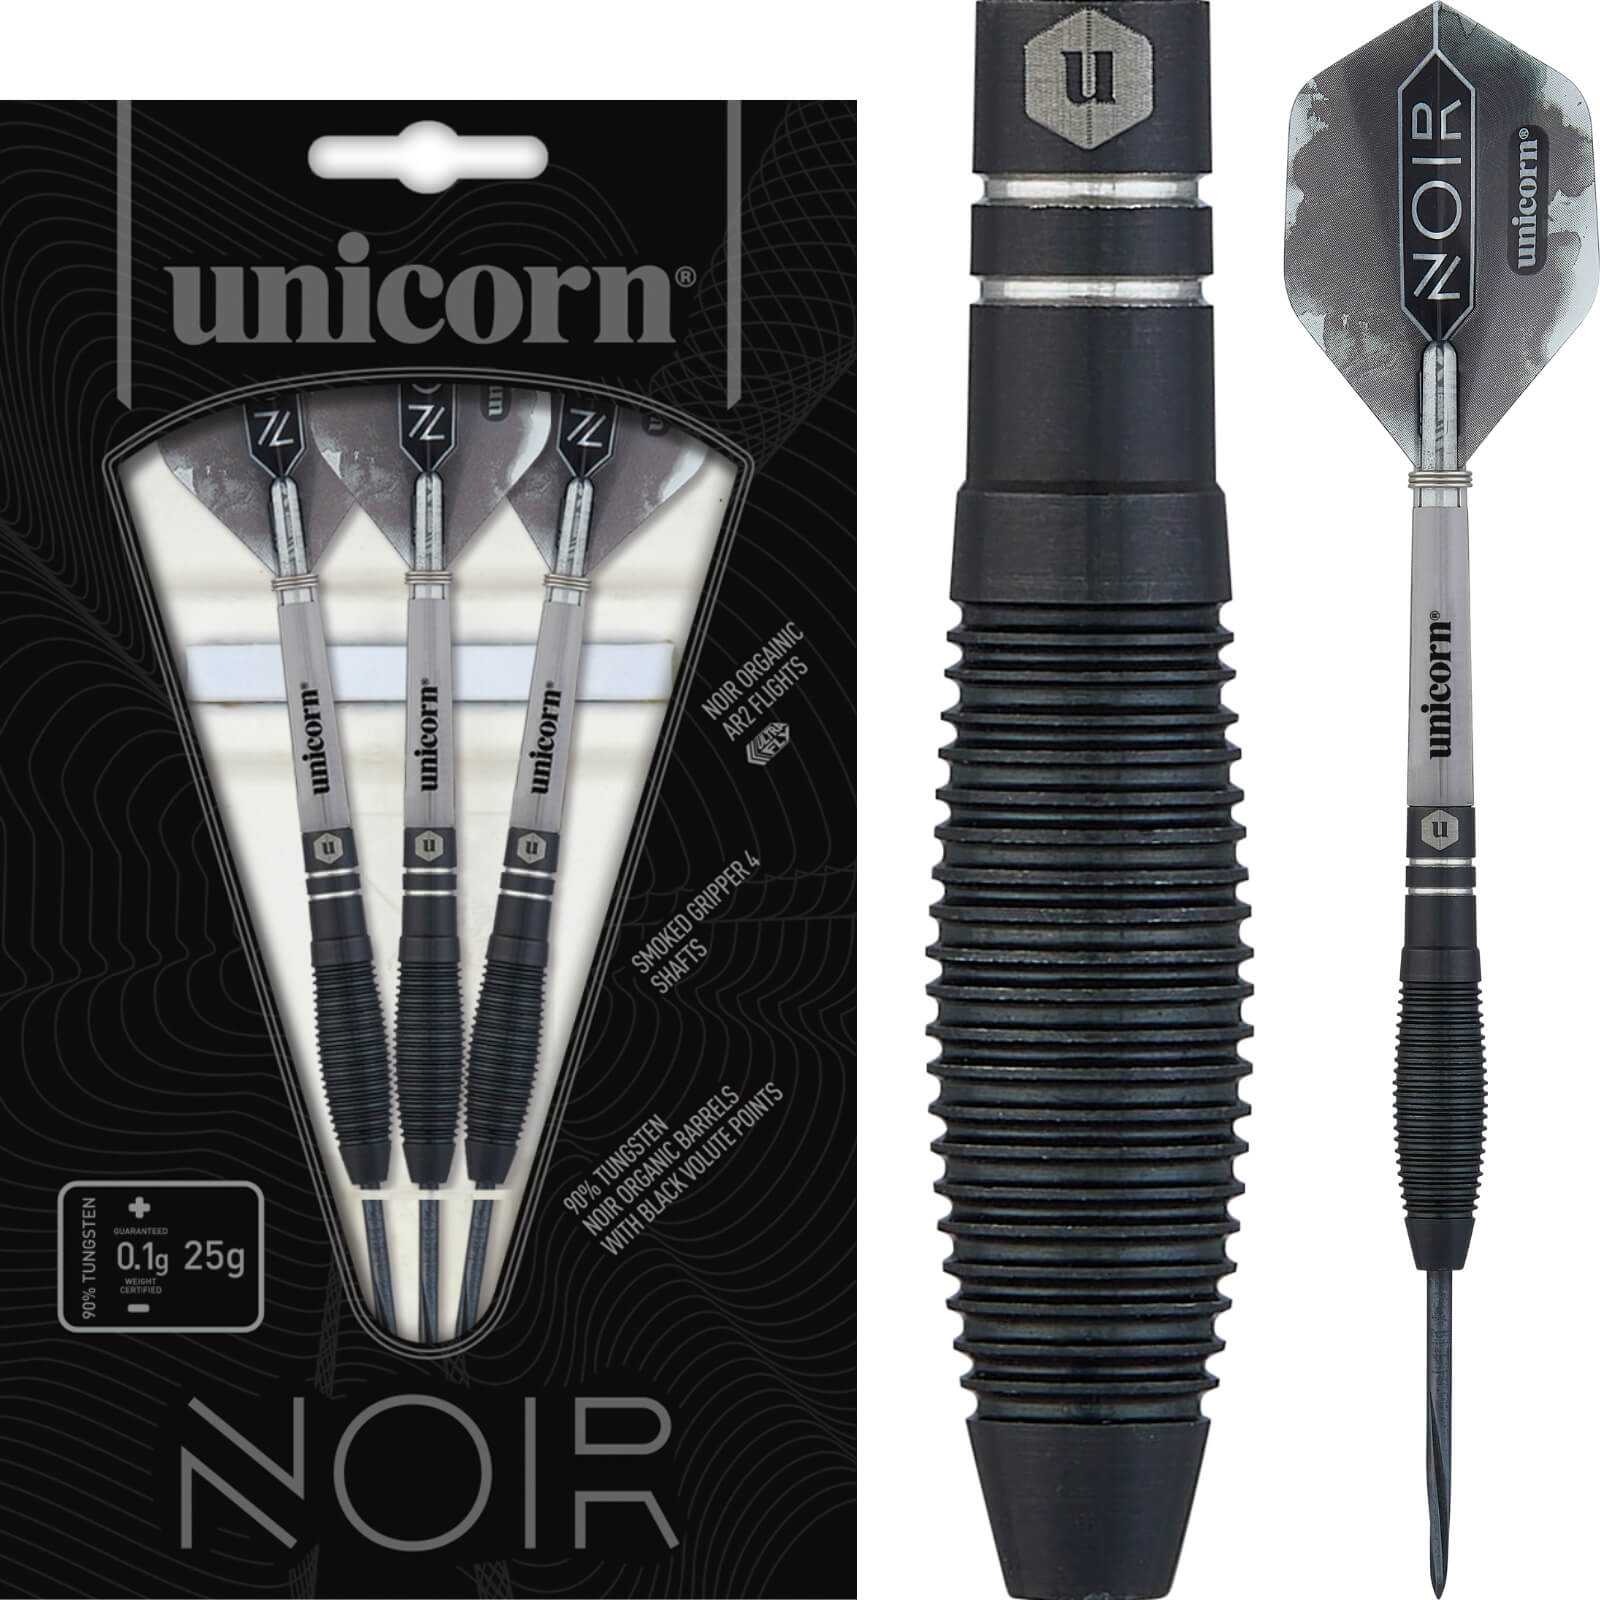 Darts - Unicorn - Noir Style 1 Darts - Steel Tip - 90% Tungsten - 21g 23g 25g 